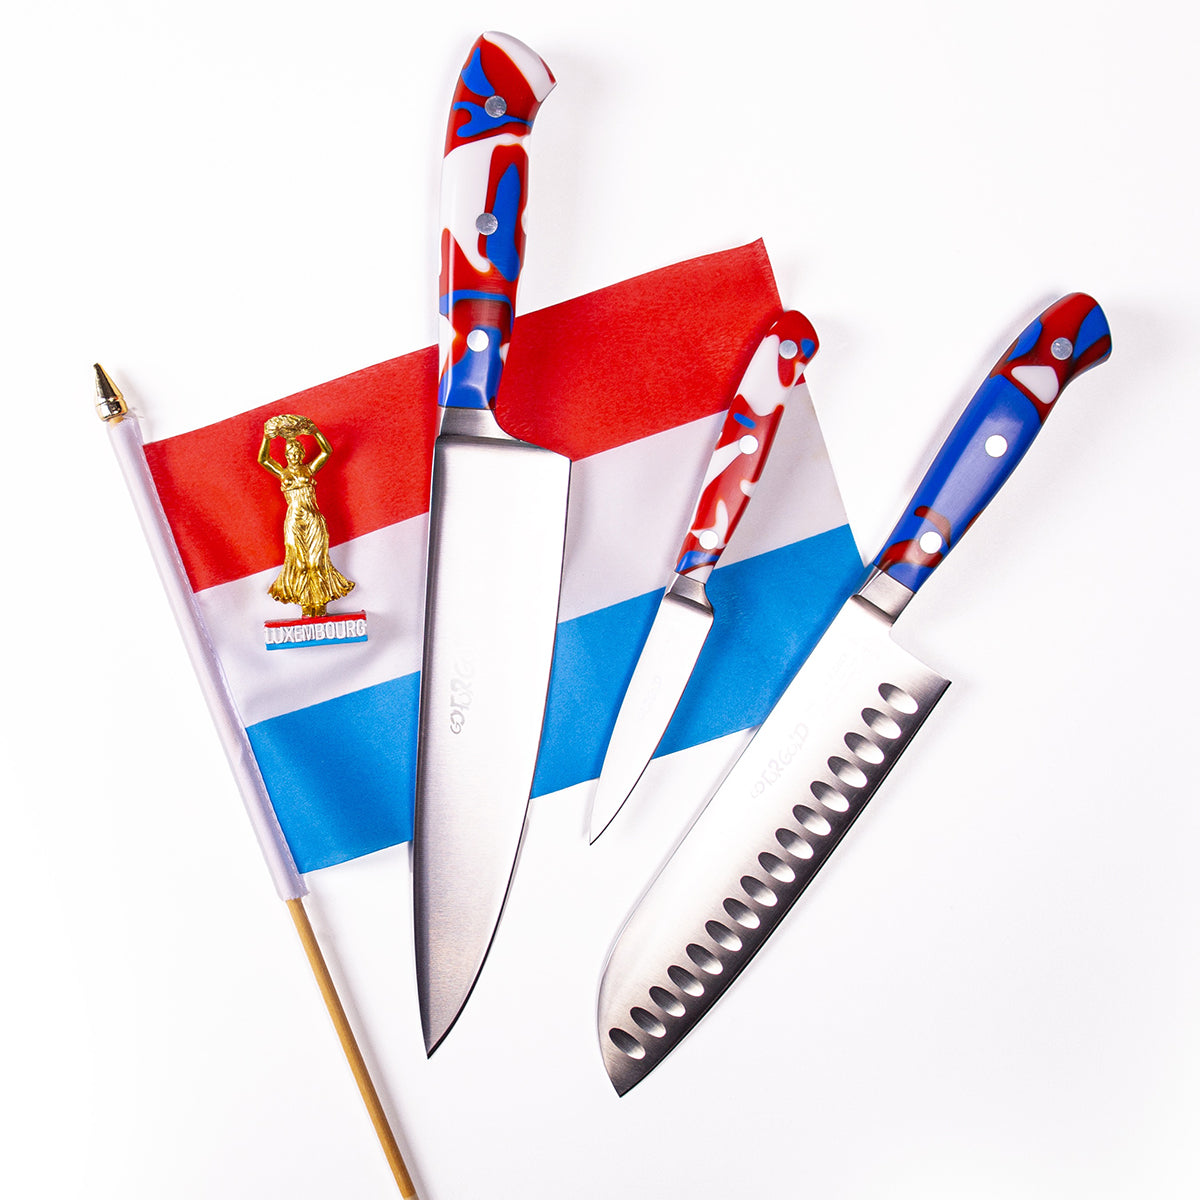 Couteau Santoku à lame alvéolée Premier Plus Edition Luxembourg